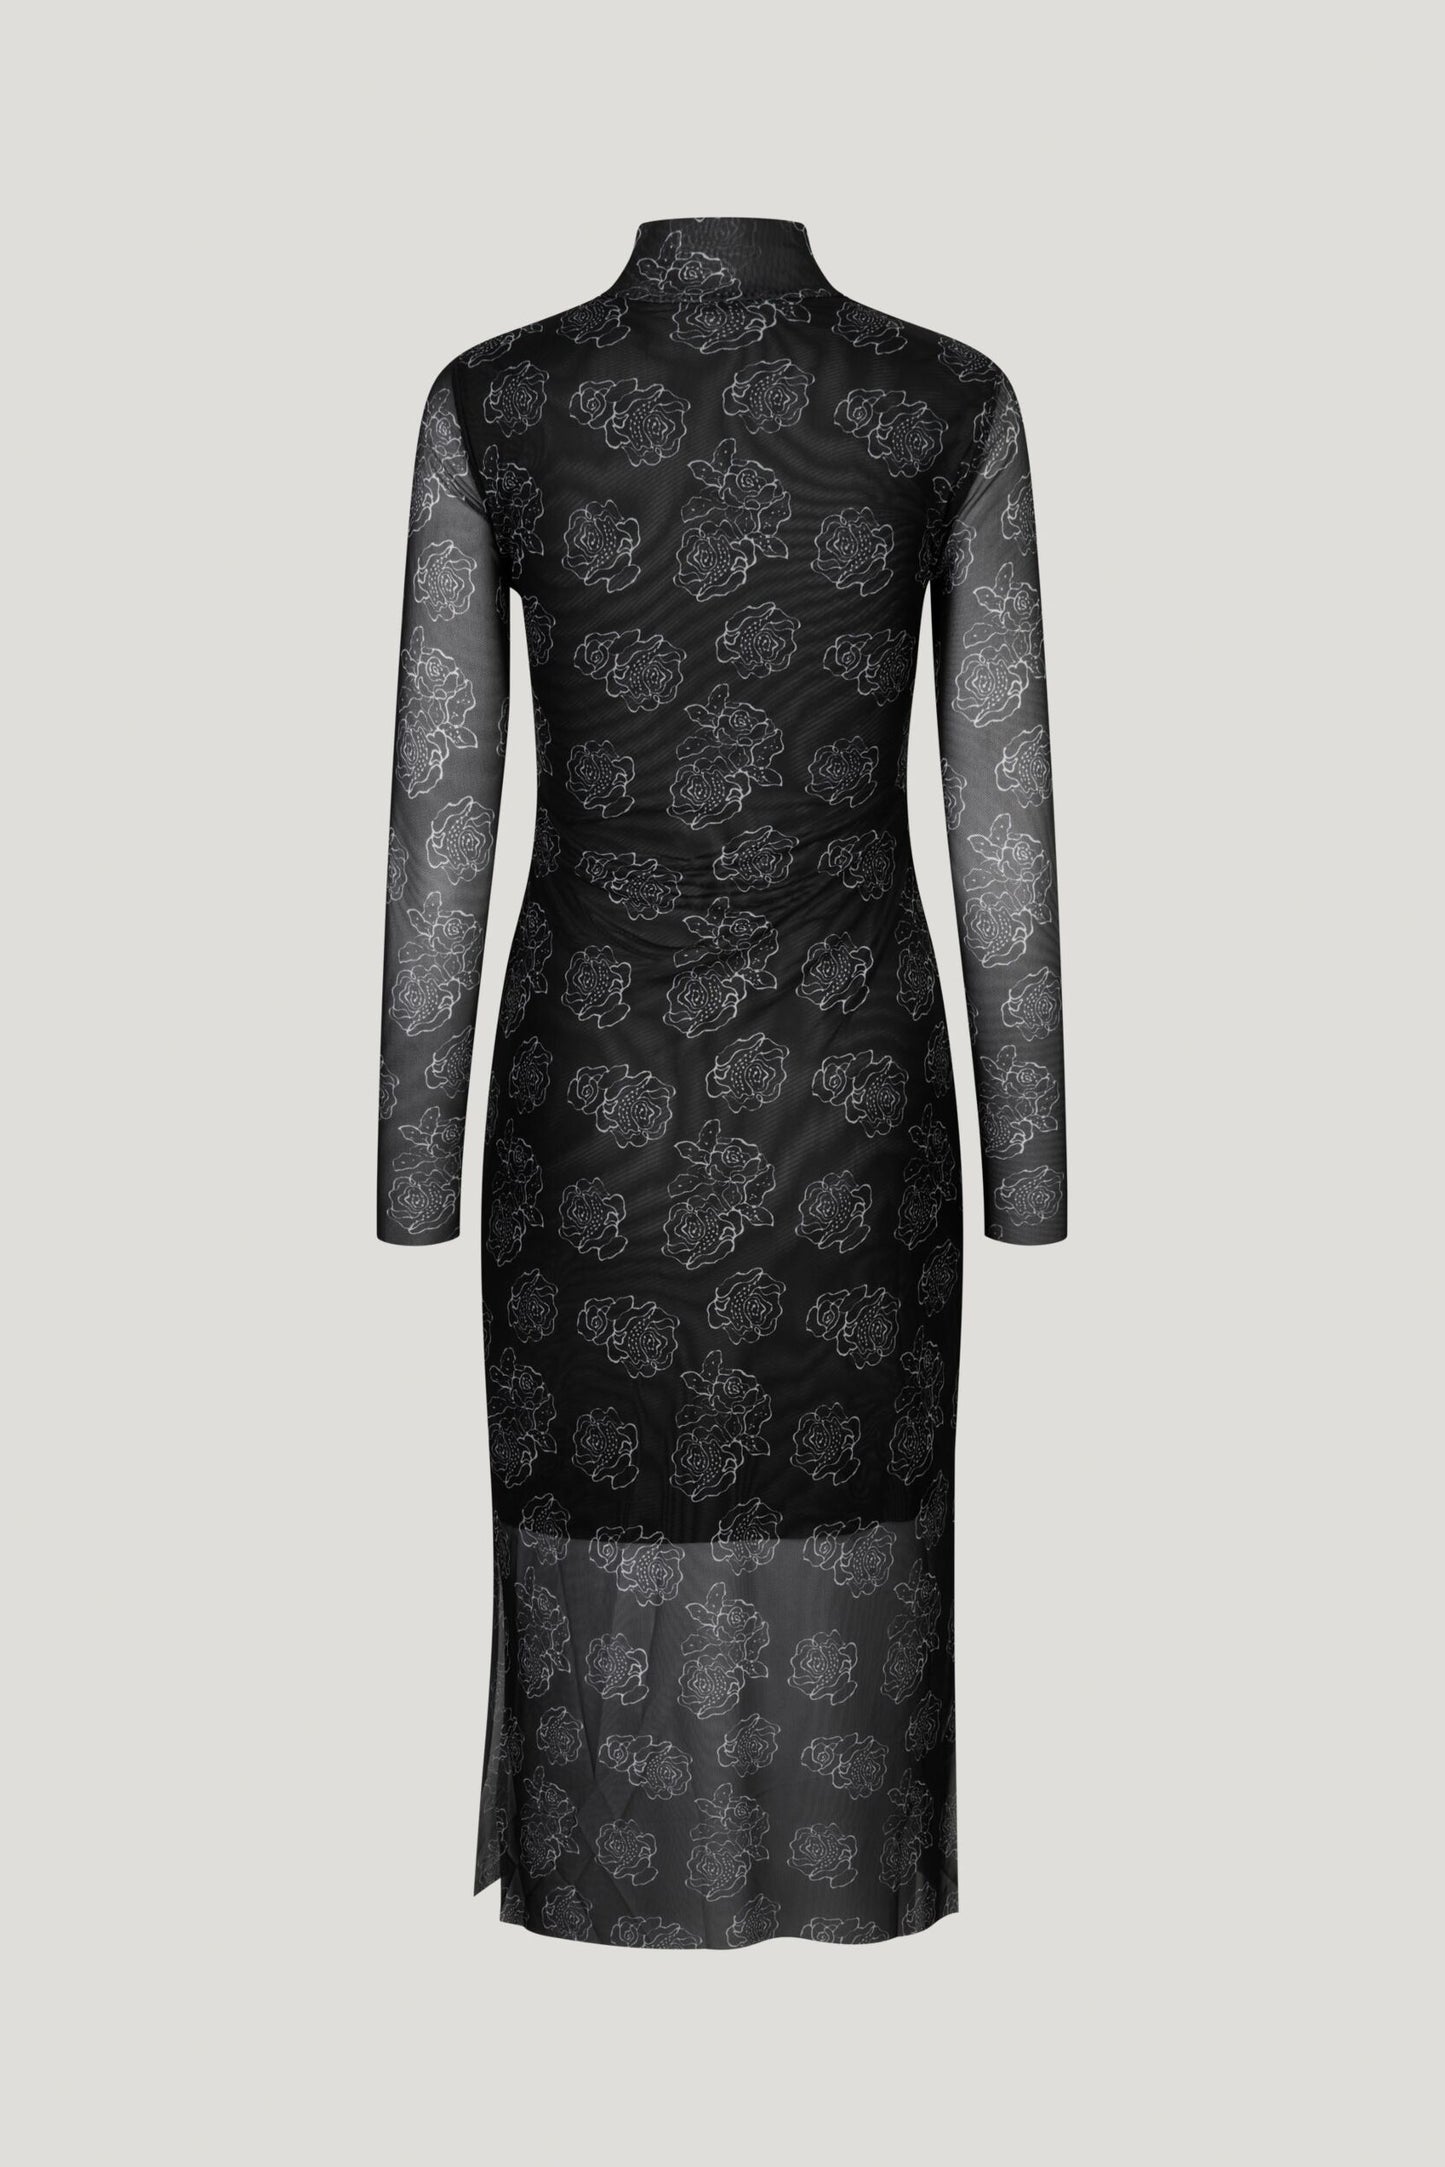 Jolain Dress - Black Embroidery Flower by Baum und Pferdgarten